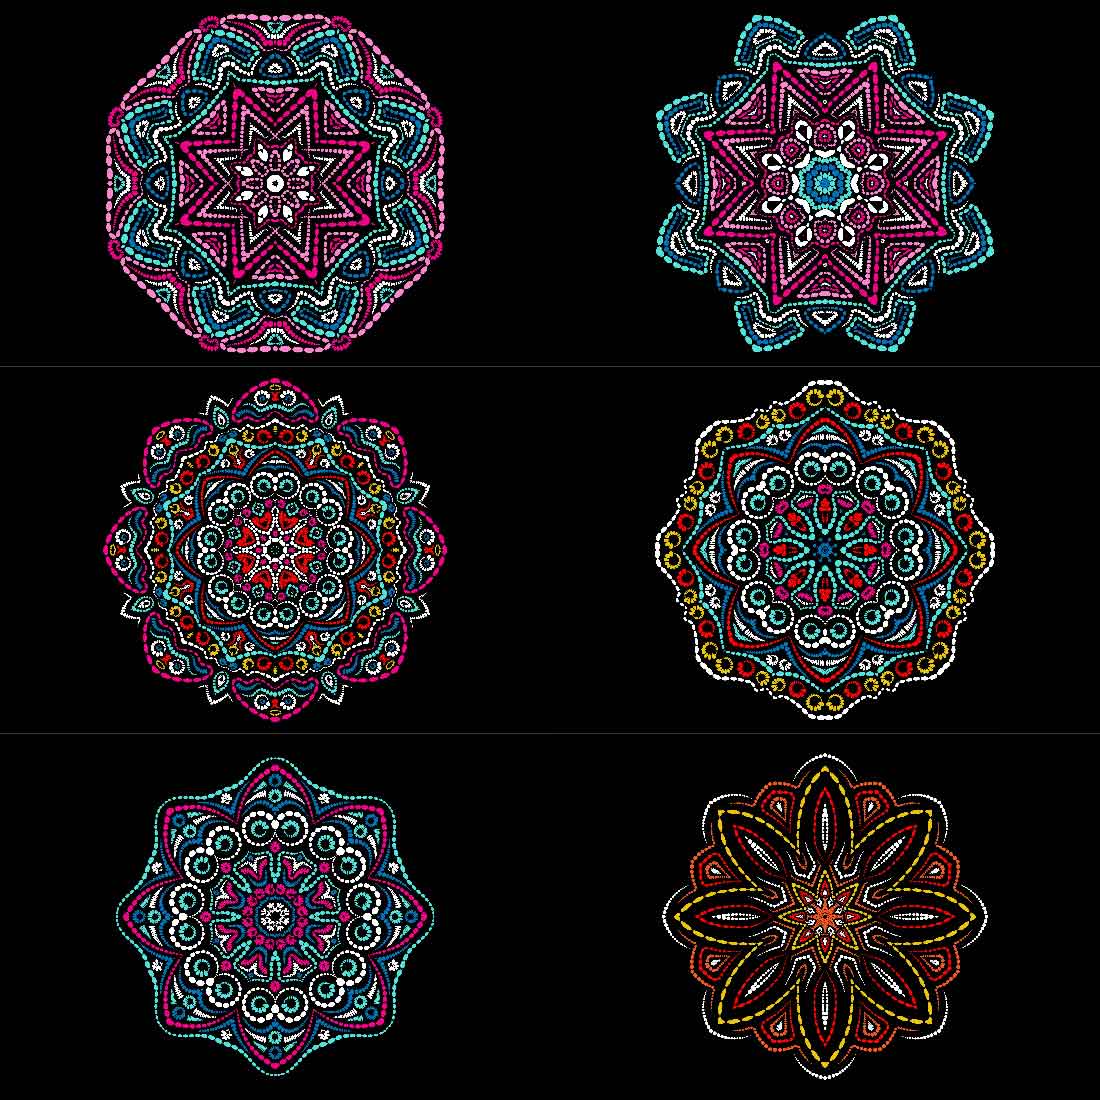 Set of gorgeous images of geometric mandalas